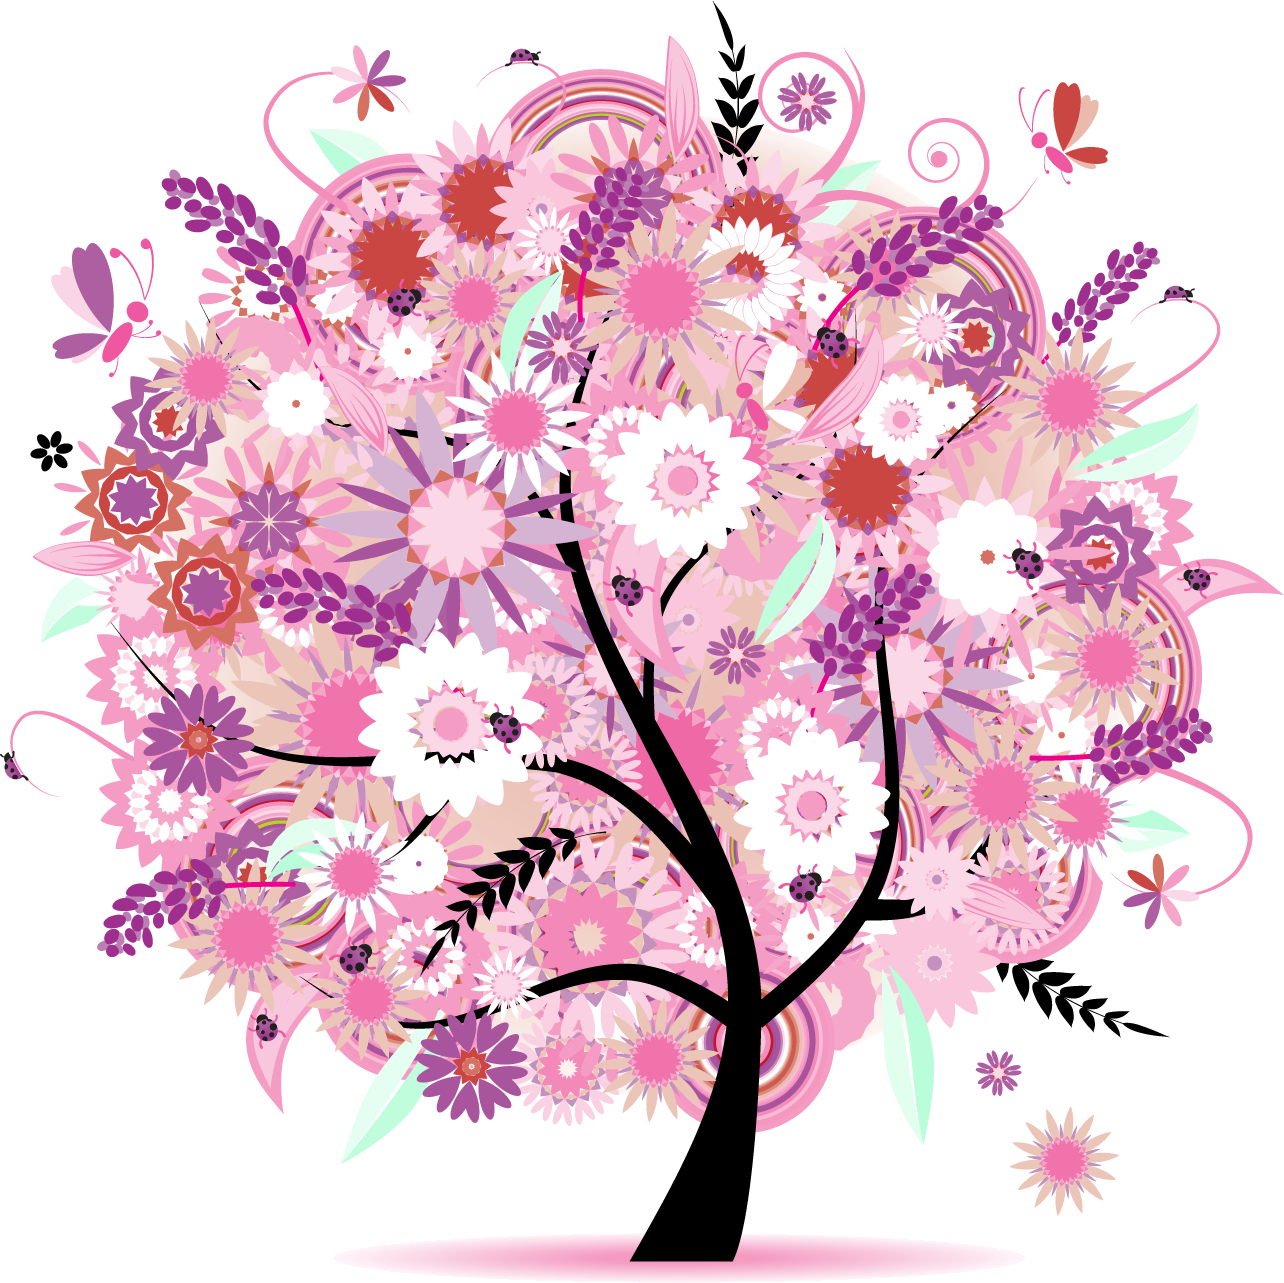 紫色の花のイラスト フリー素材 No 402 春の樹木と蝶